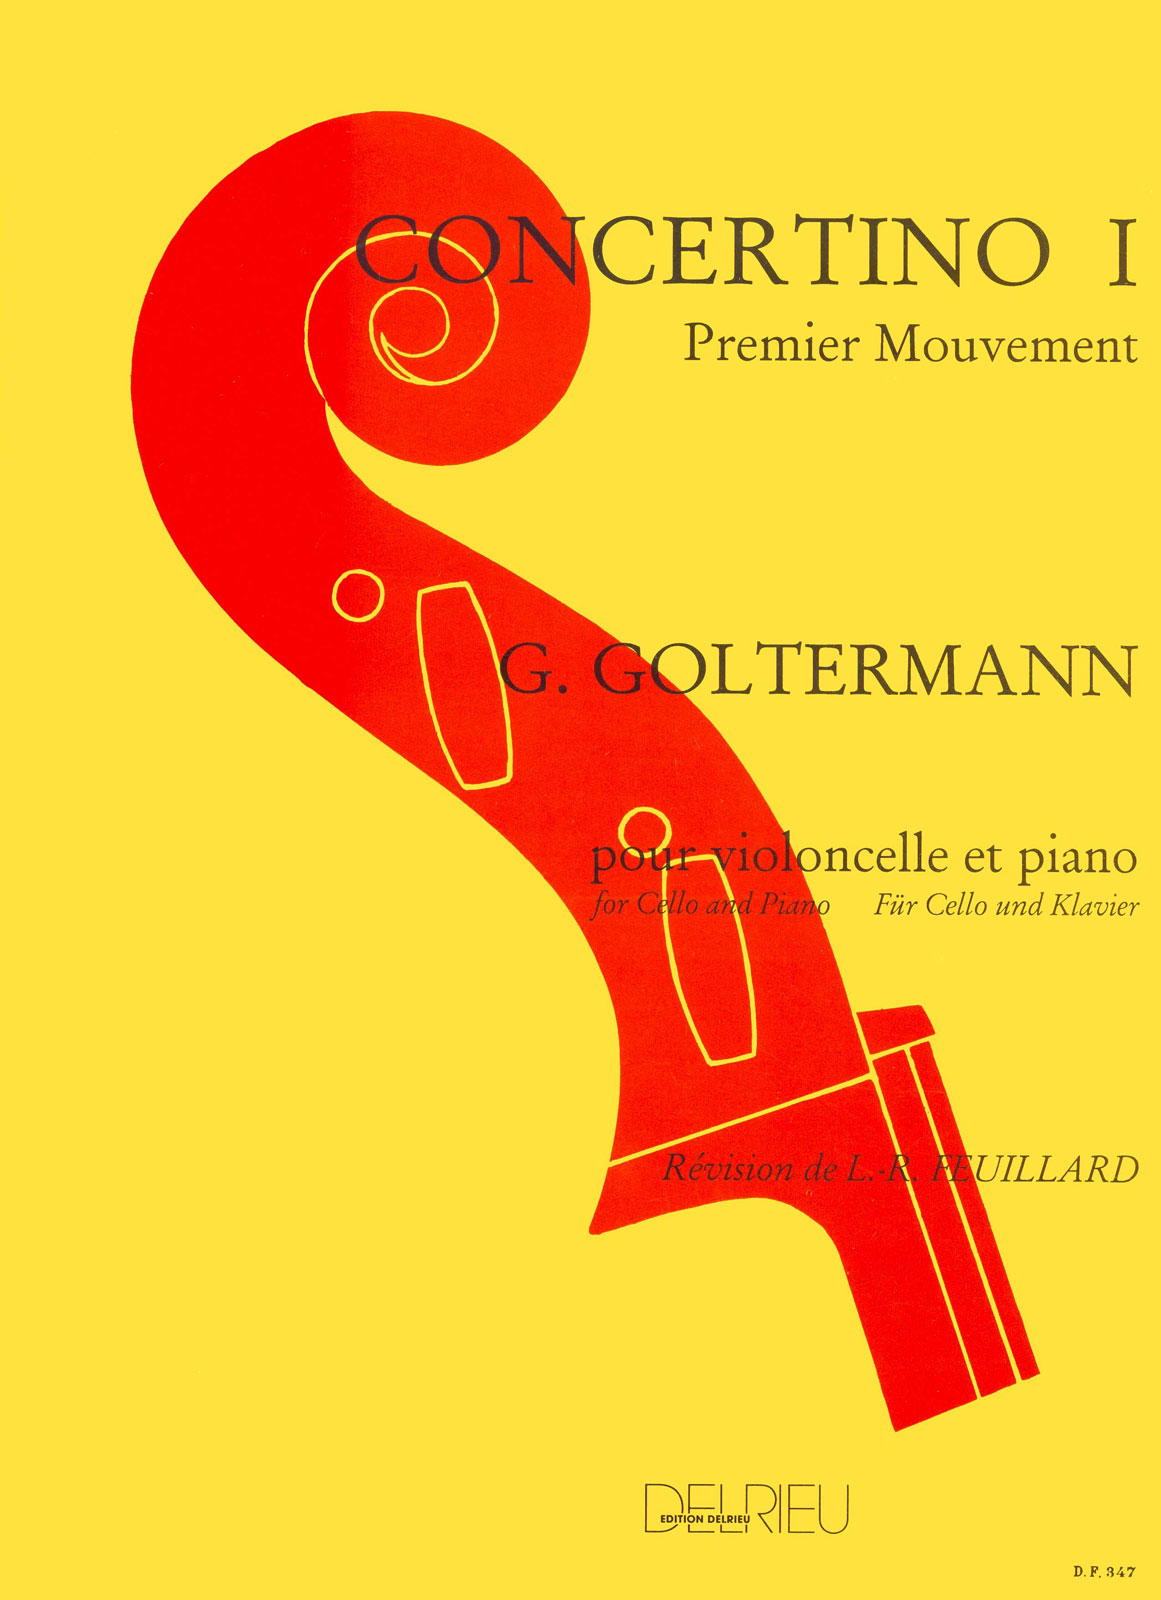 EDITION DELRIEU GOLTERMANN GEORG - CONCERTO N°1 OP.14 EN LA MIN. - PREMIER MOUVEMENT - VIOLONCELLE, PIANO